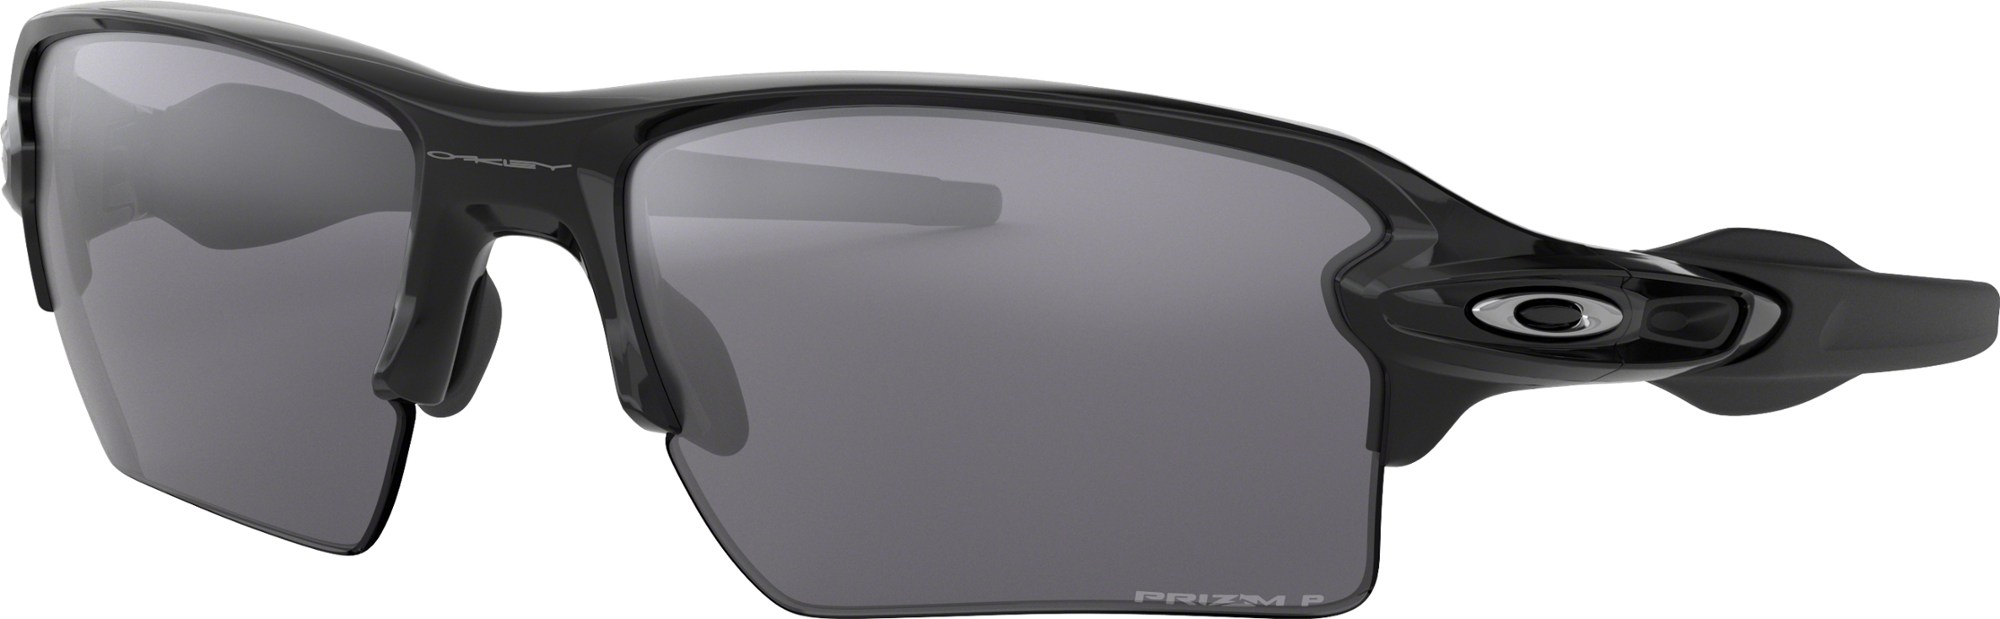 Солнцезащитные очки Flak 2.0 XL Oakley, черный